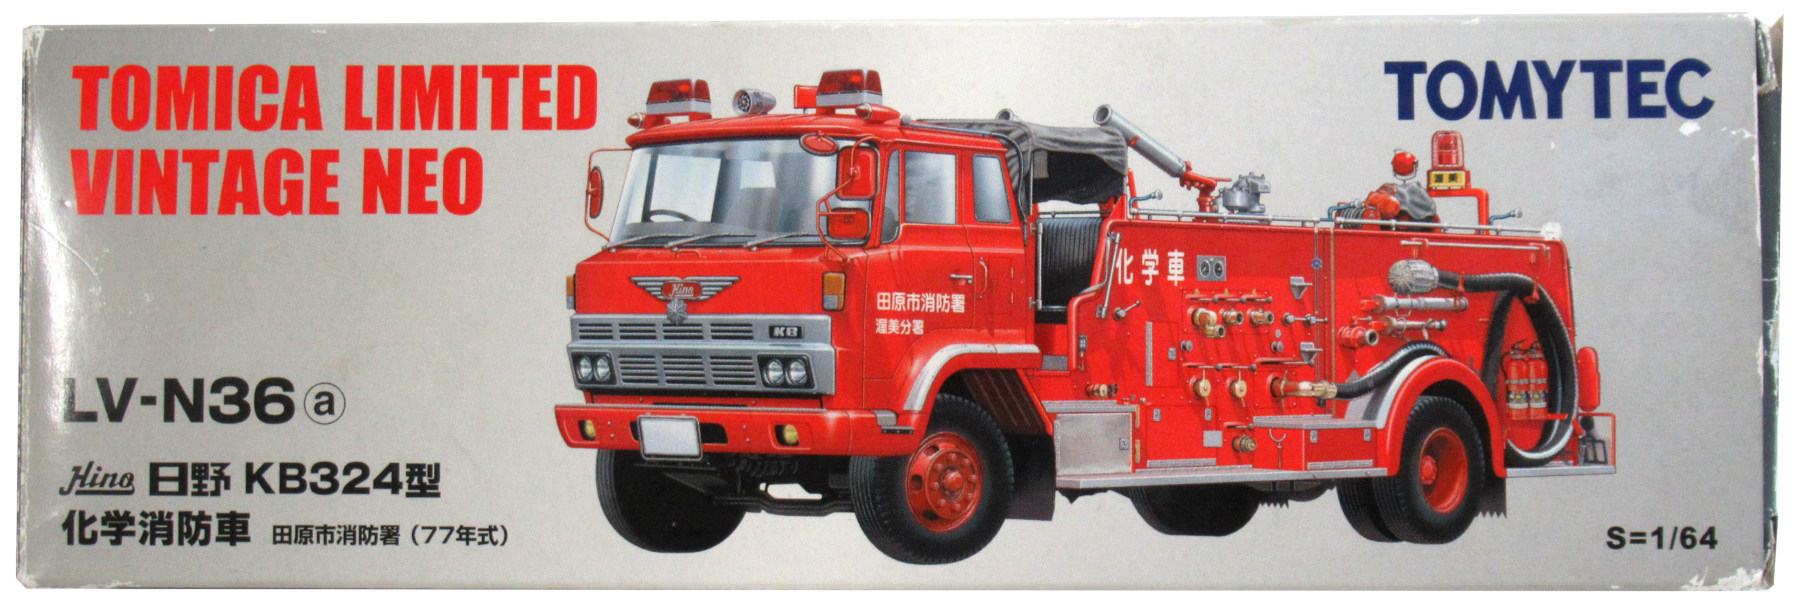 日野 KB324型 化学消防車 田原市消防署（77年式）LV-N36（a）トミカ で